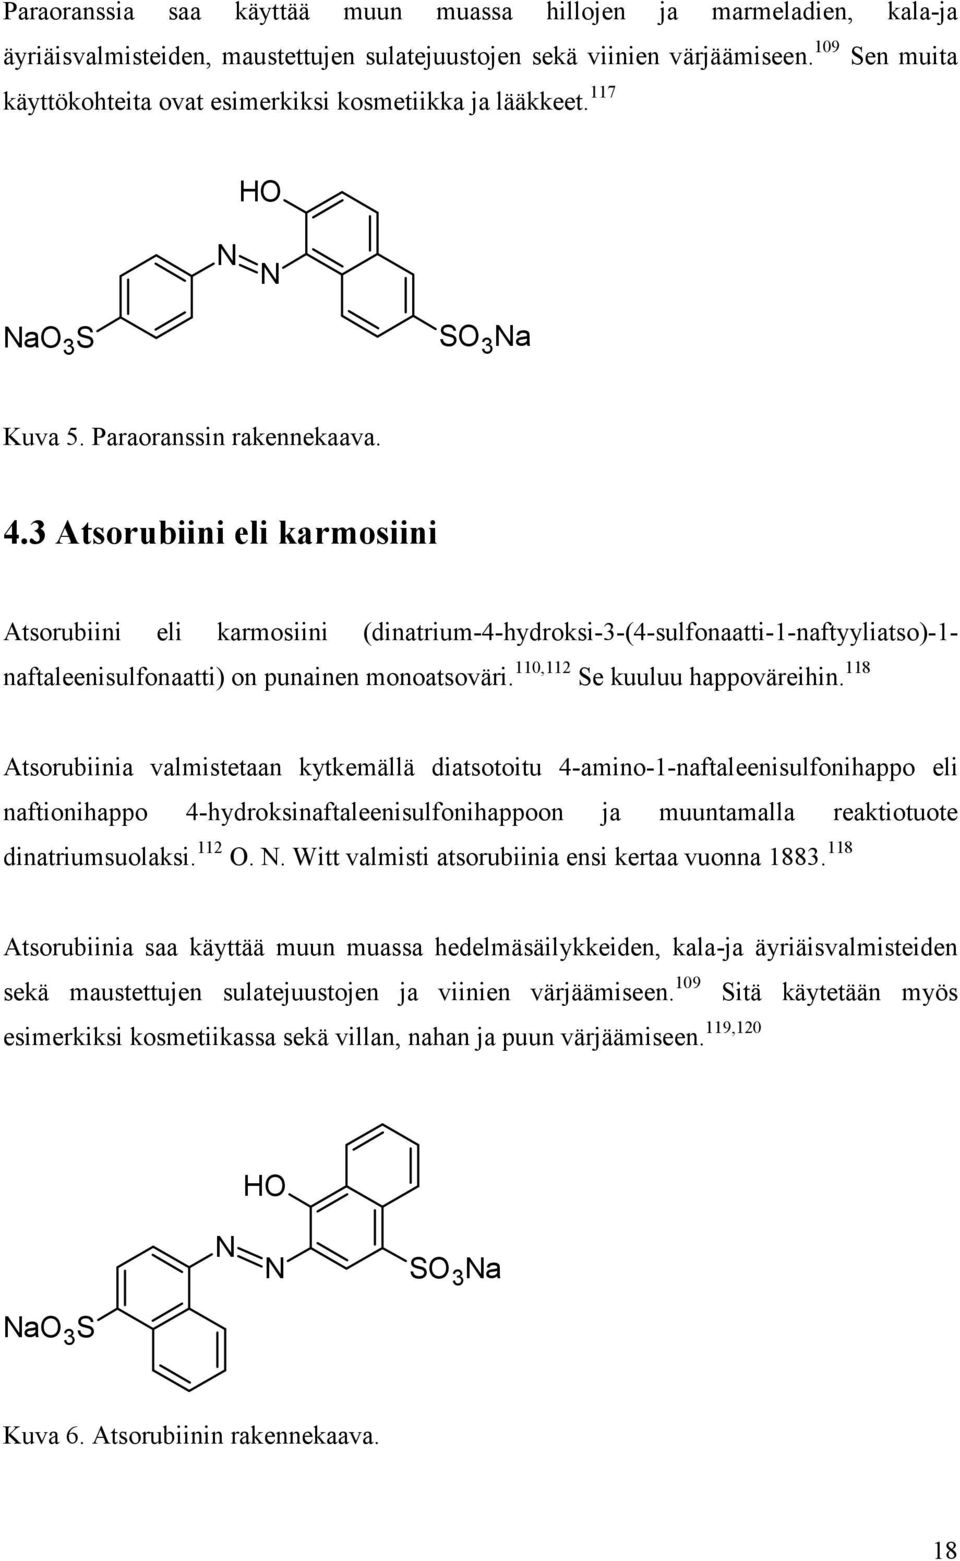 3 Atsorubiini eli karmosiini Atsorubiini eli karmosiini (dinatrium-4-hydroksi-3-(4-sulfonaatti-1-naftyyliatso)-1- naftaleenisulfonaatti) on punainen monoatsoväri. 110,112 Se kuuluu happoväreihin.